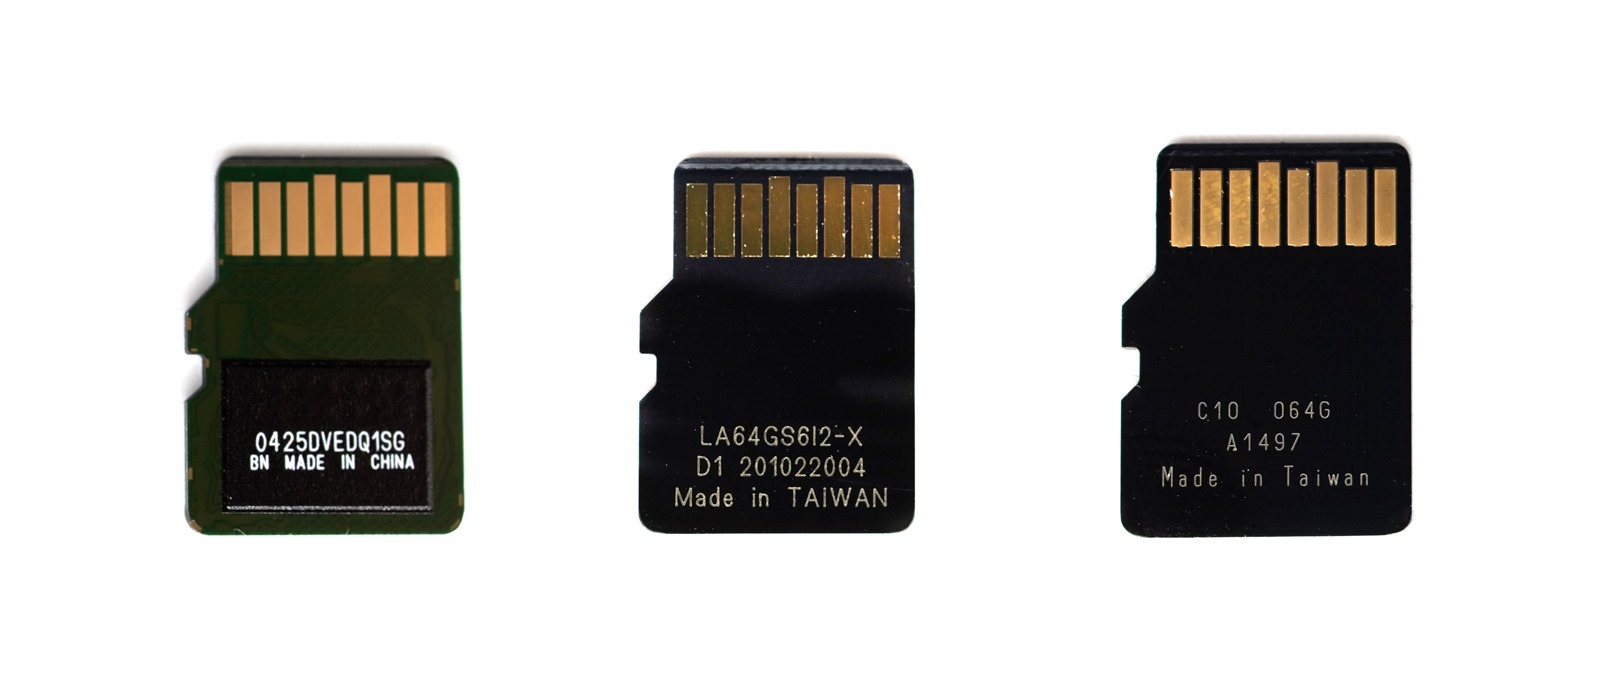 小容量記憶卡選擇 Sandisk 64GB / Patriot 64GB / KLEVV 64GB 速度簡測 @3C 達人廖阿輝